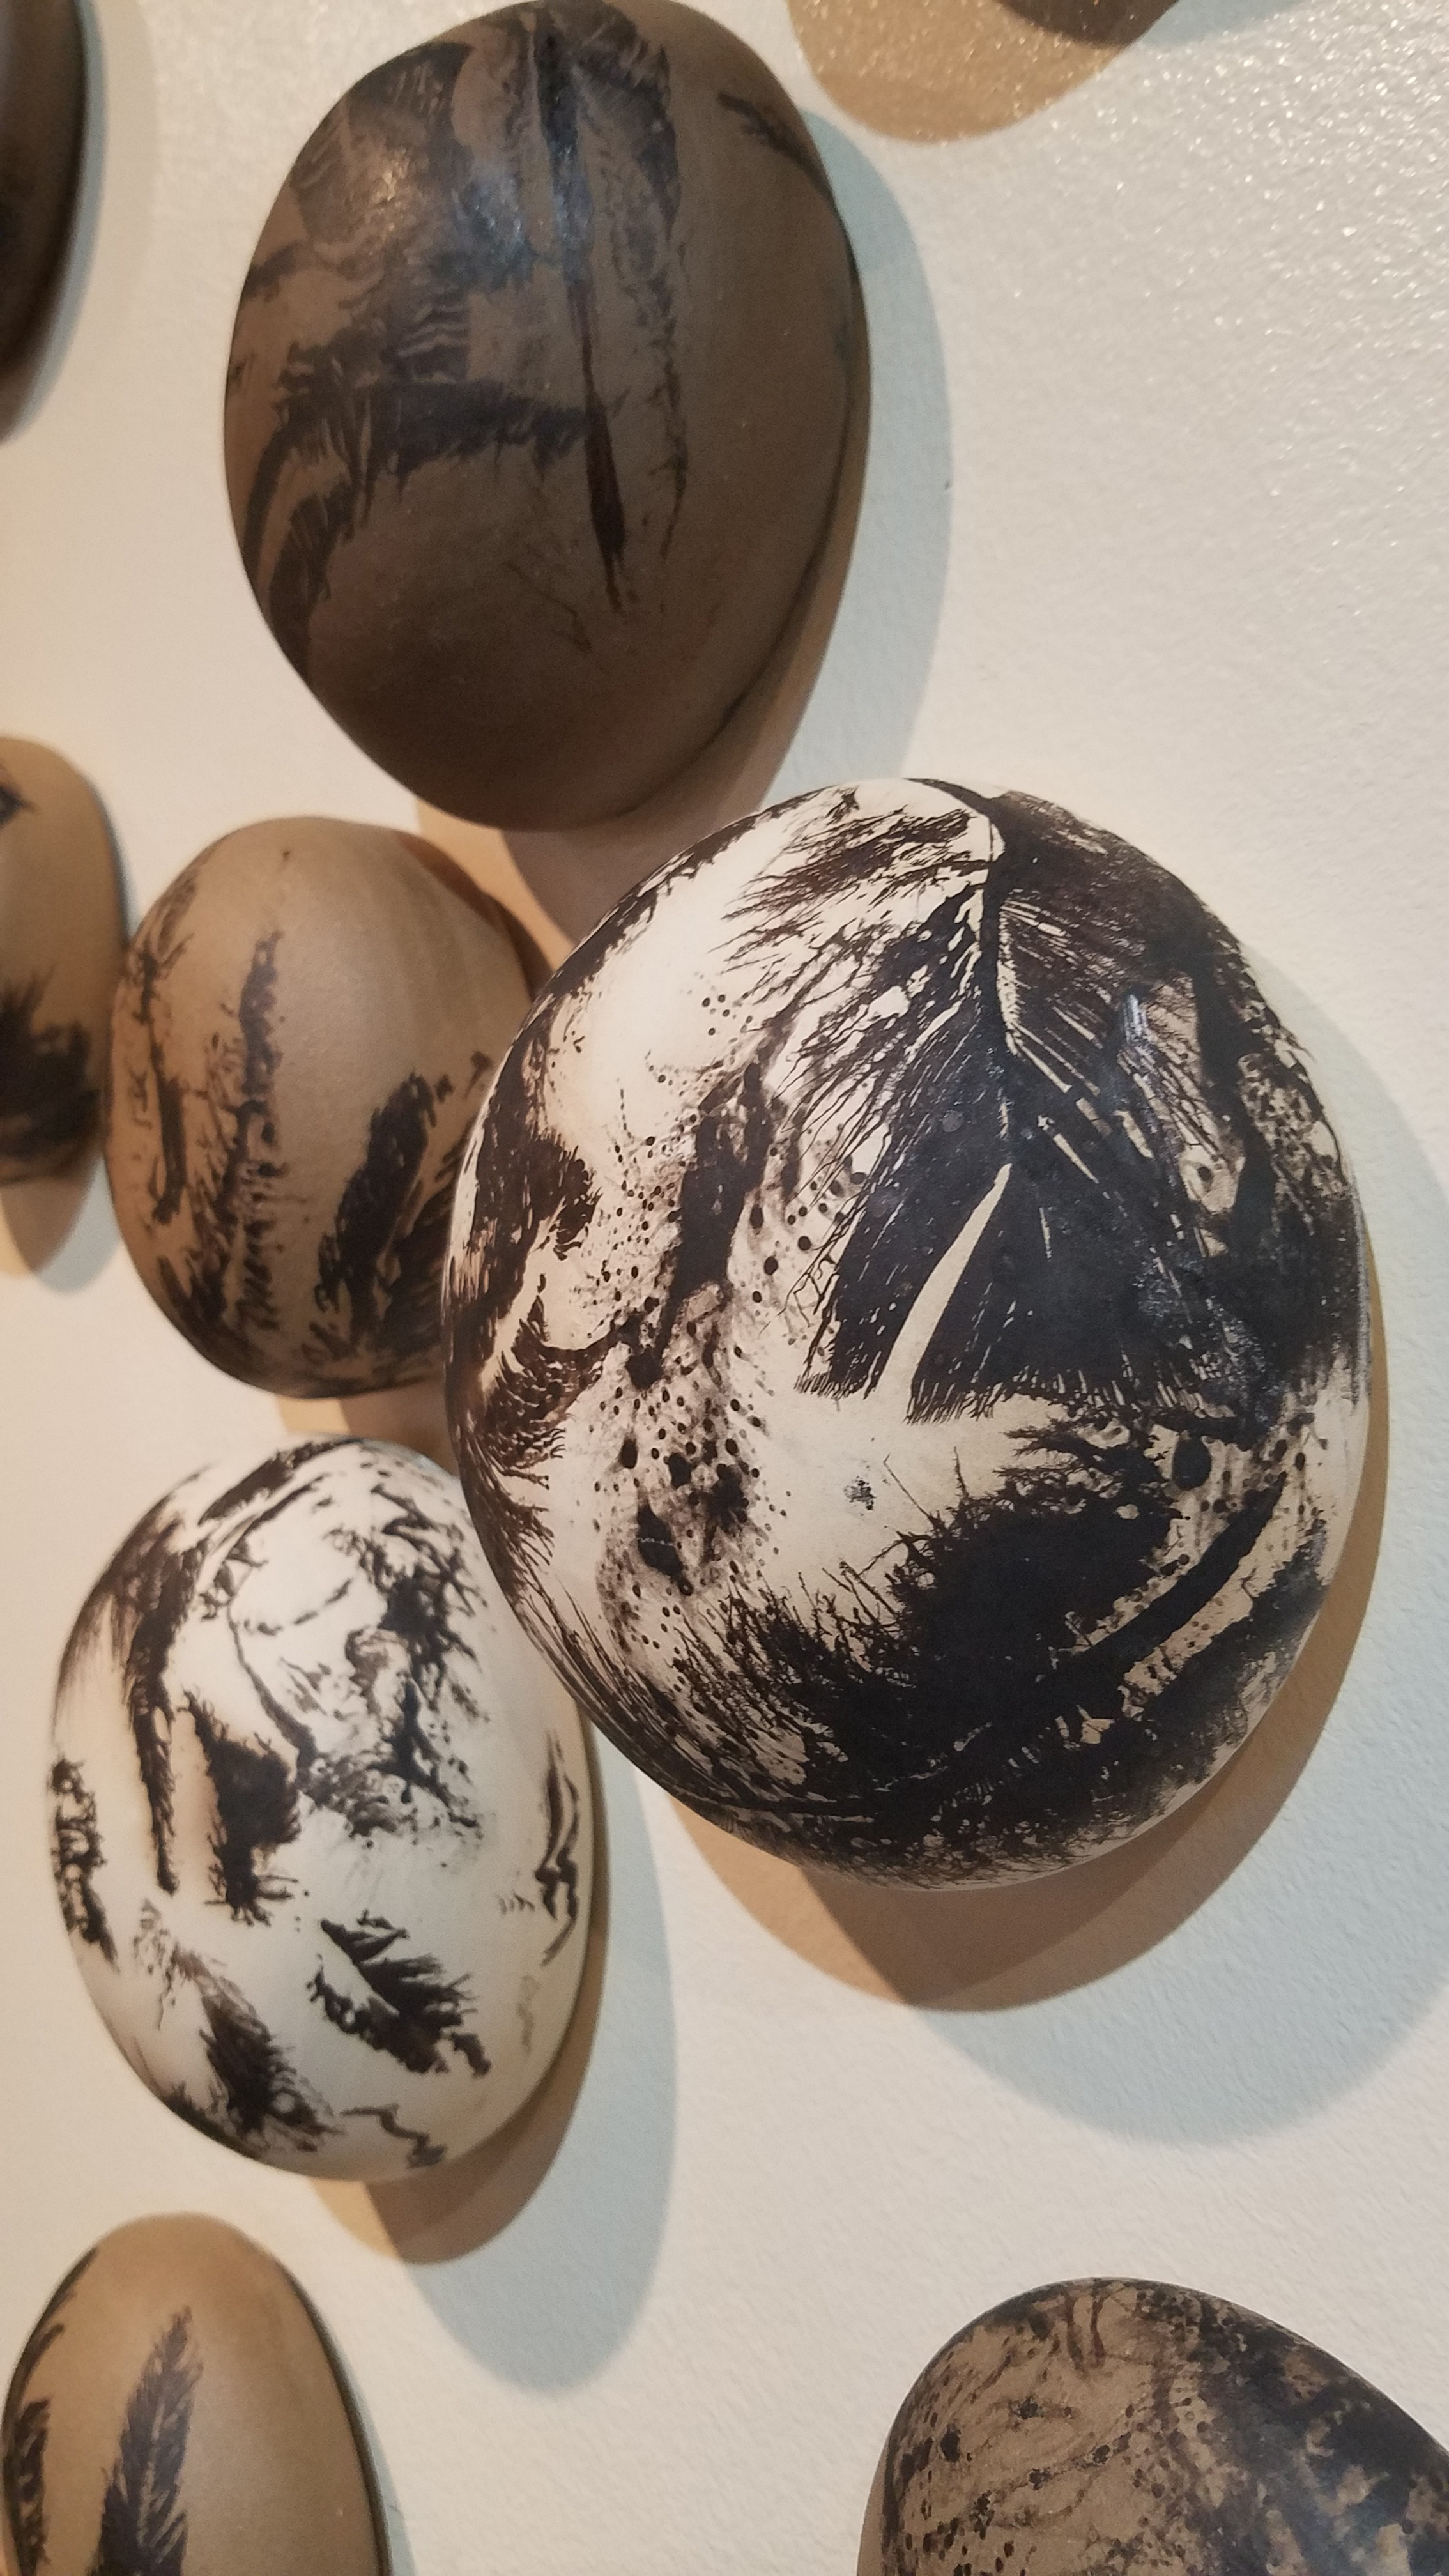 Anna Lee raku ceramics with carbon feathers